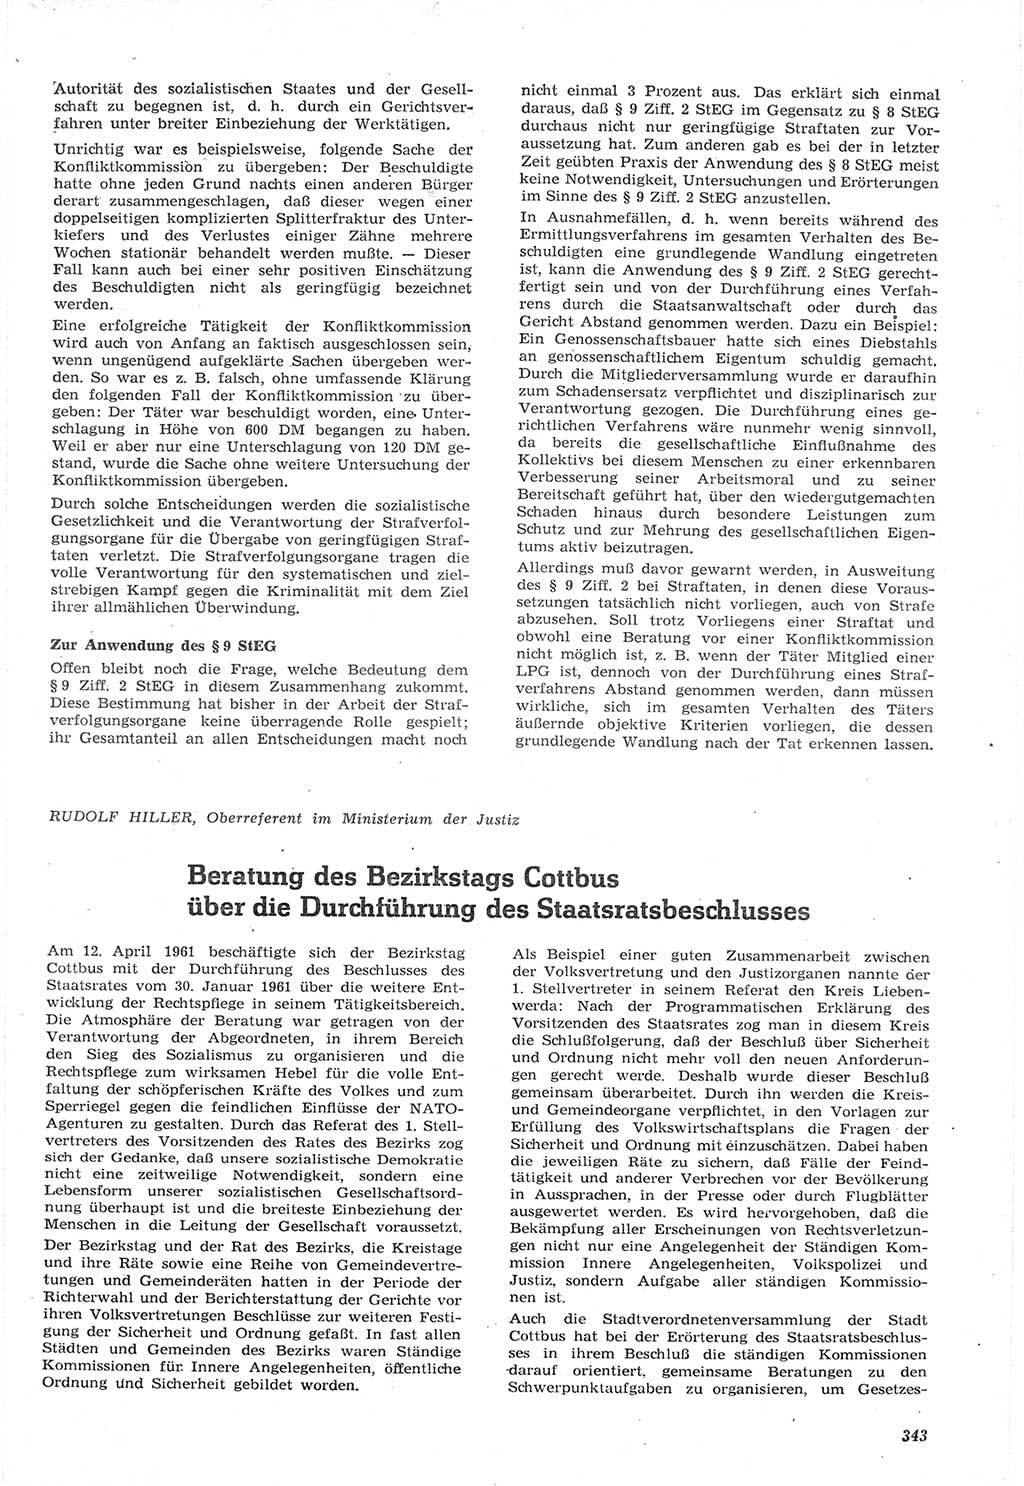 Neue Justiz (NJ), Zeitschrift für Recht und Rechtswissenschaft [Deutsche Demokratische Republik (DDR)], 15. Jahrgang 1961, Seite 343 (NJ DDR 1961, S. 343)